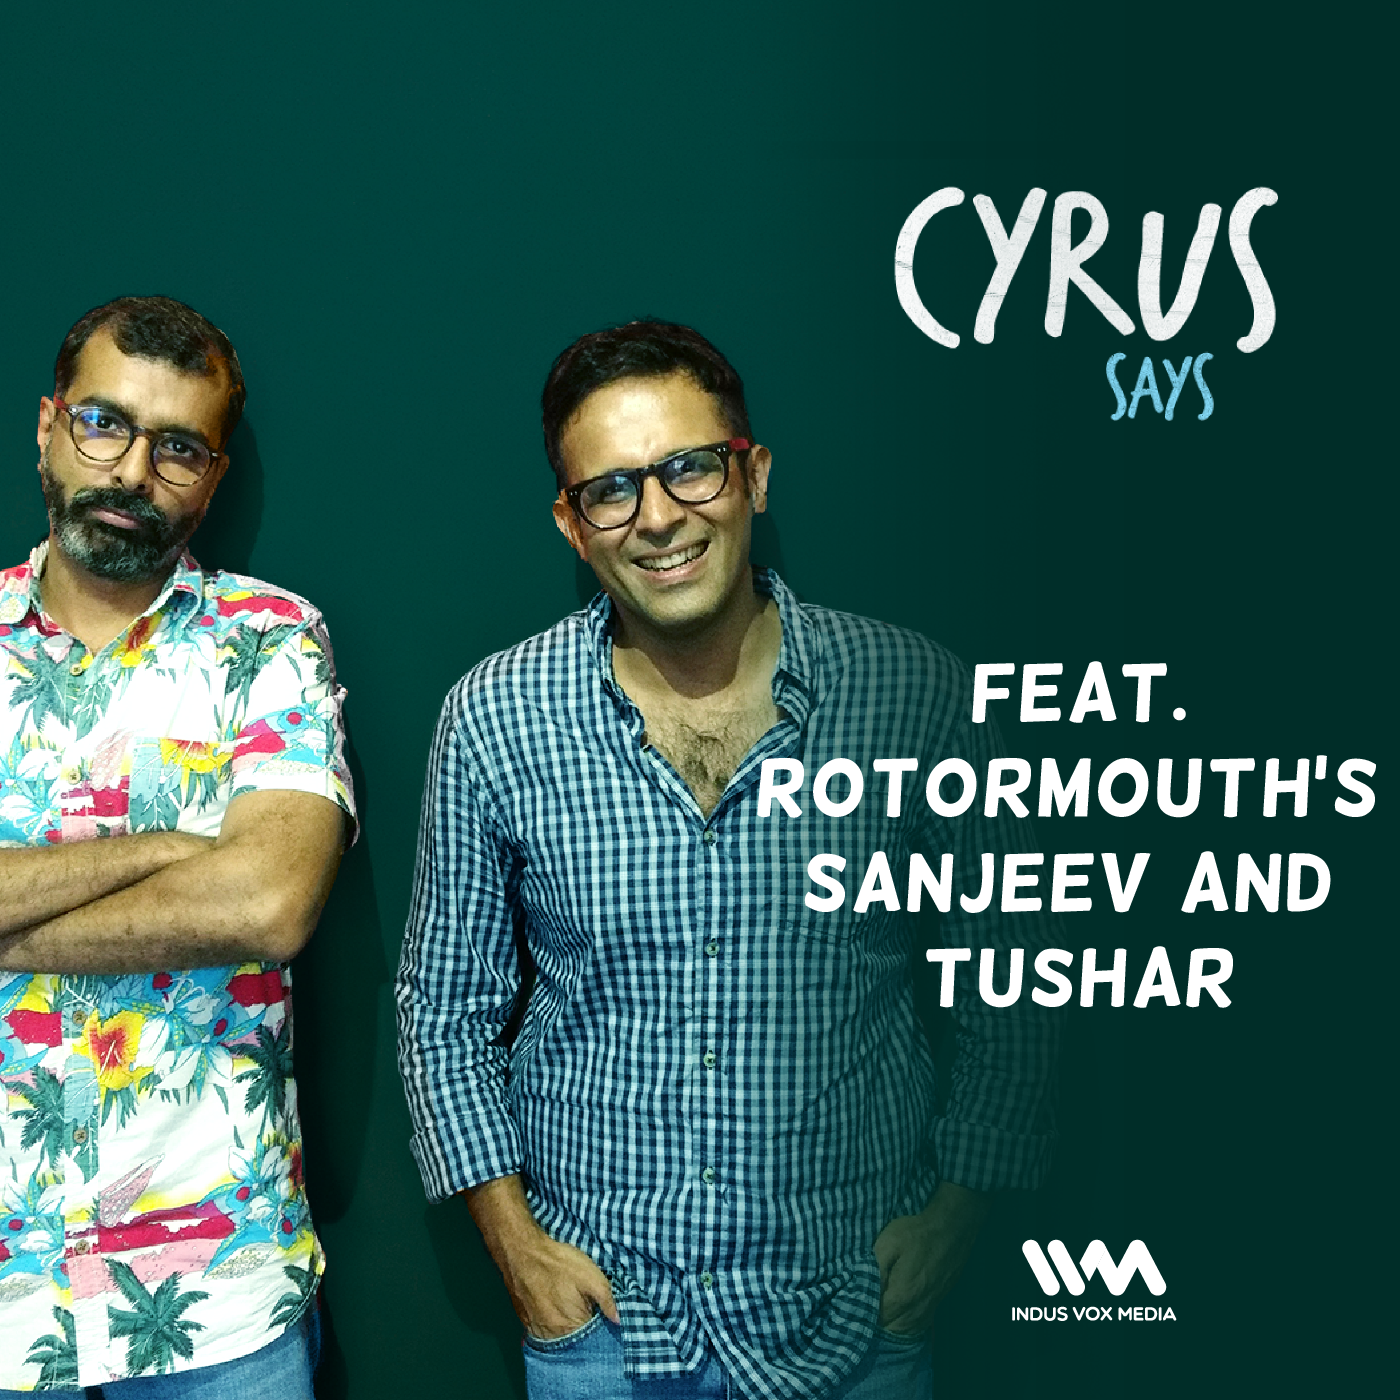 EP. 25: Sanjeev and Tushar on Cyrus Says